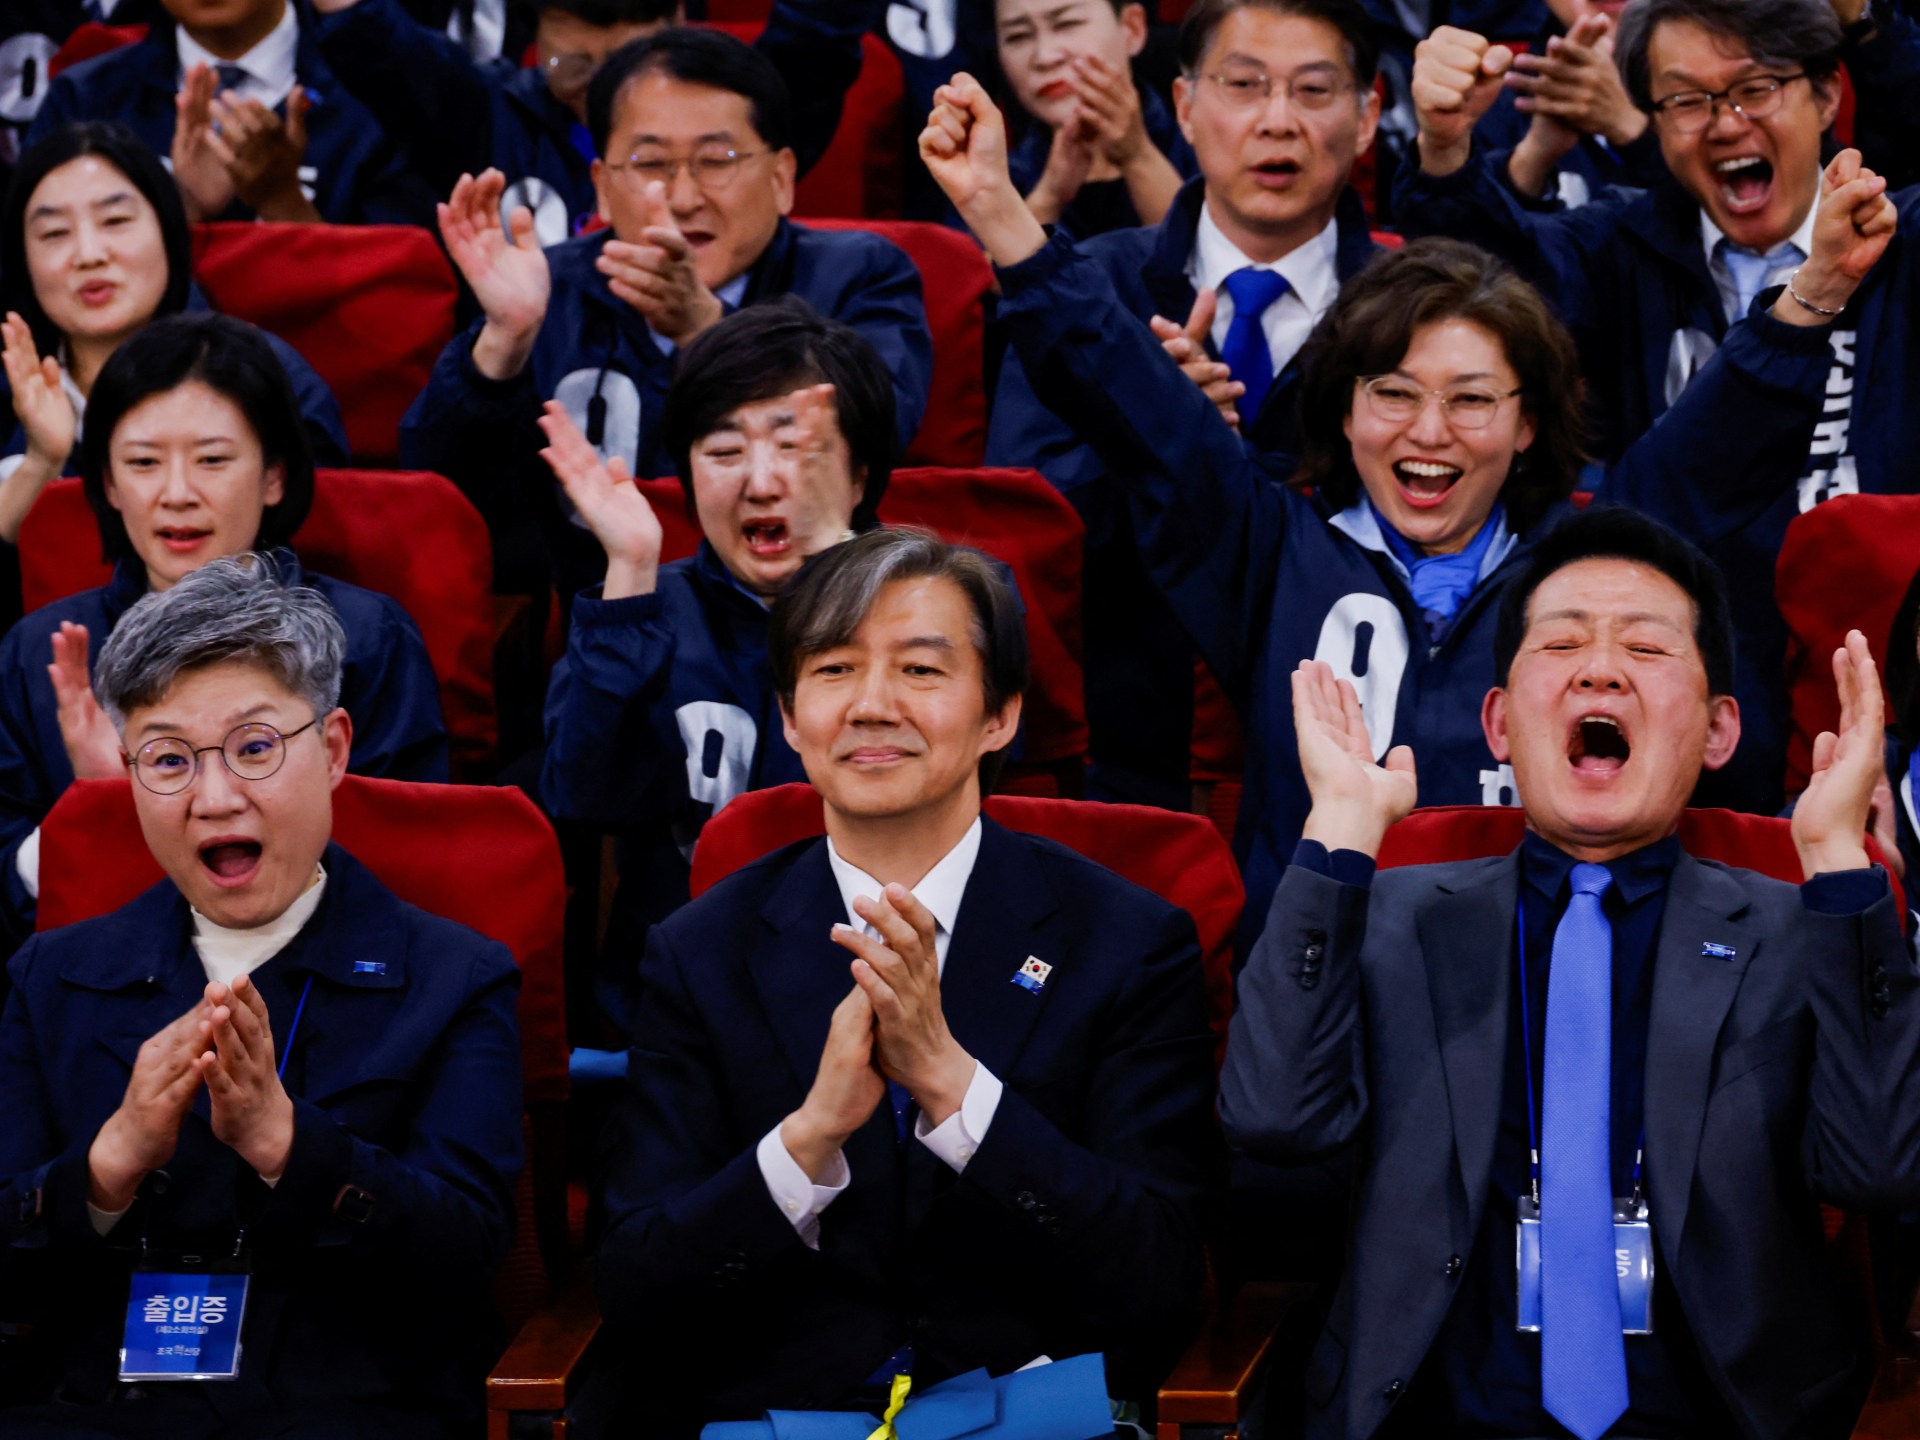 韩国选举：民意调查显示反对党占多数| 选举新闻